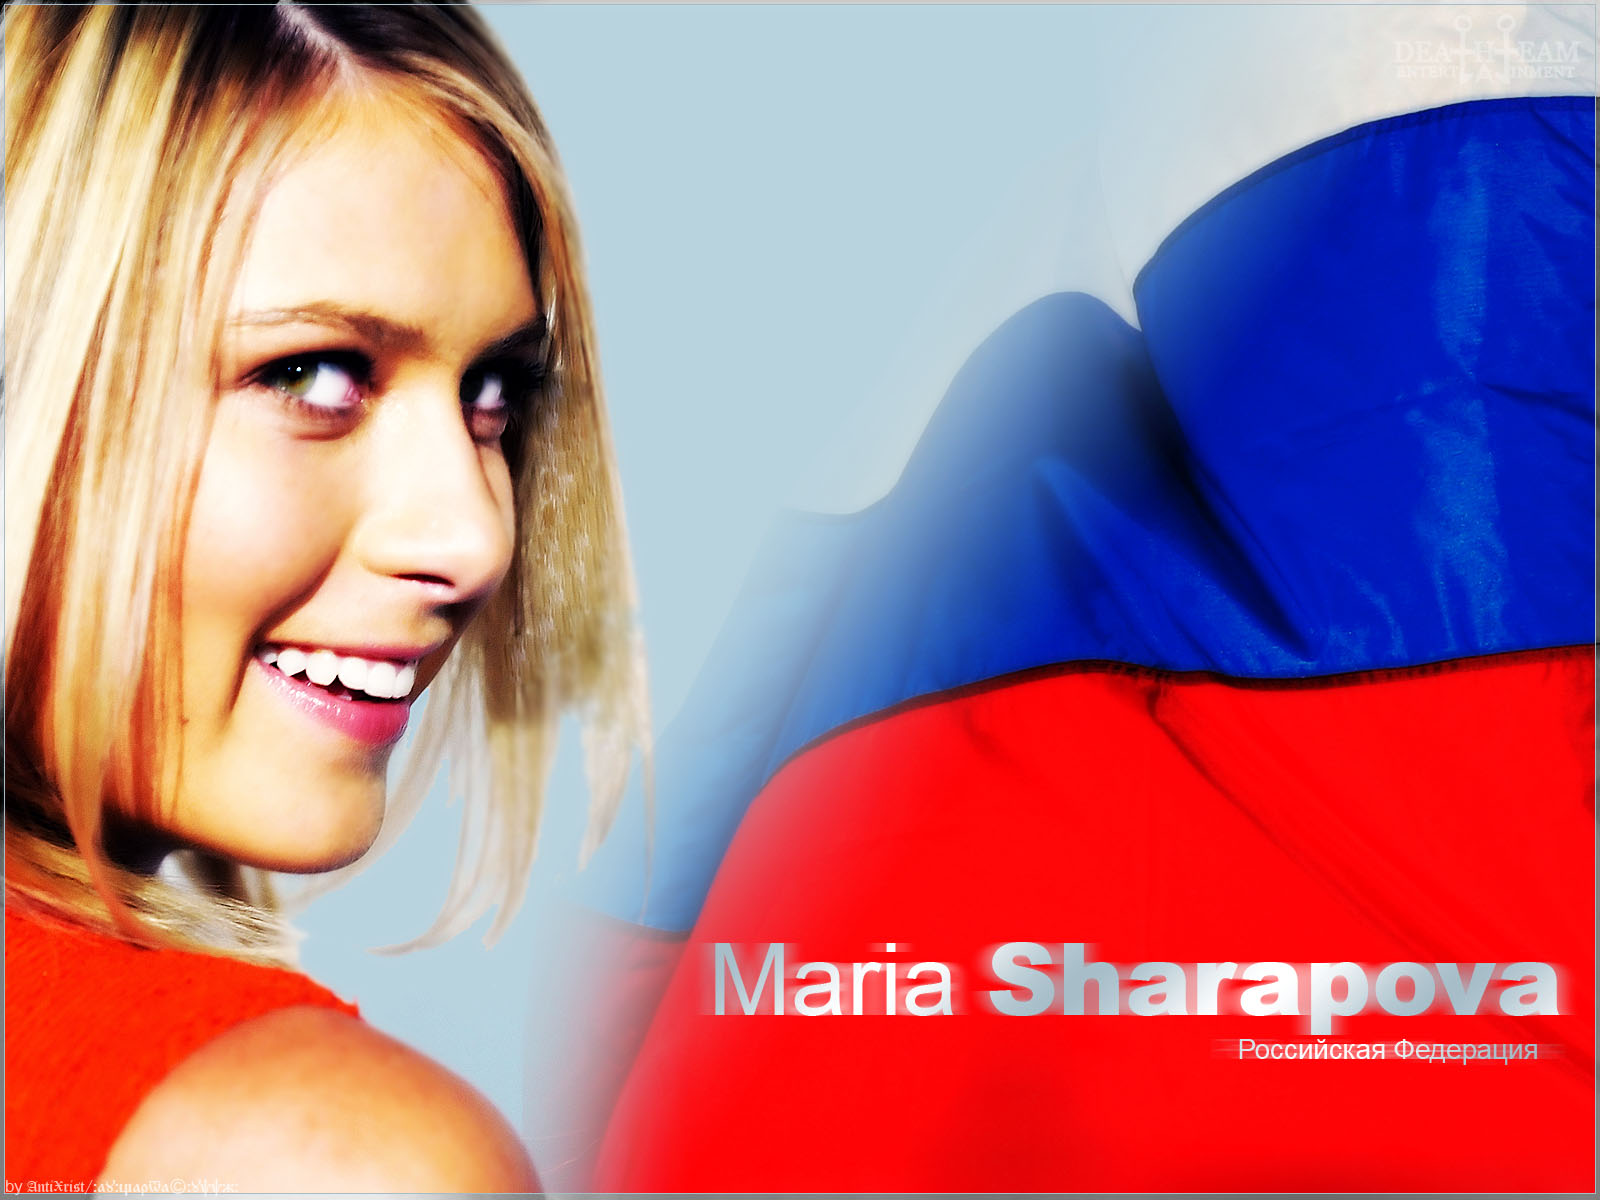 Sharapova Maria Media